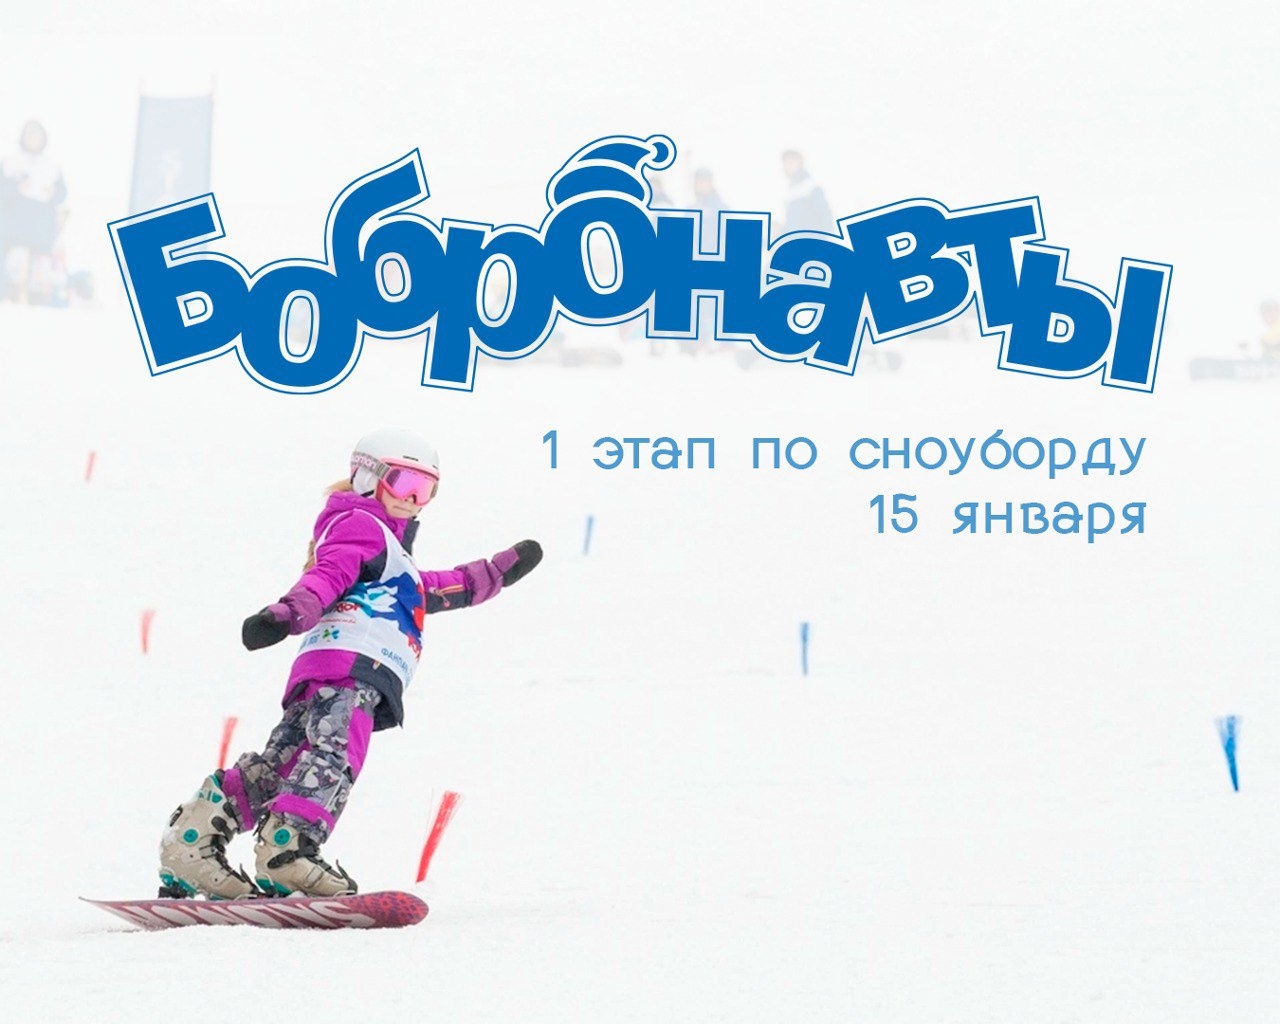 I этап соревнований «Снежные бобронавты» по сноуборду стартует в Фанпарке 15 января